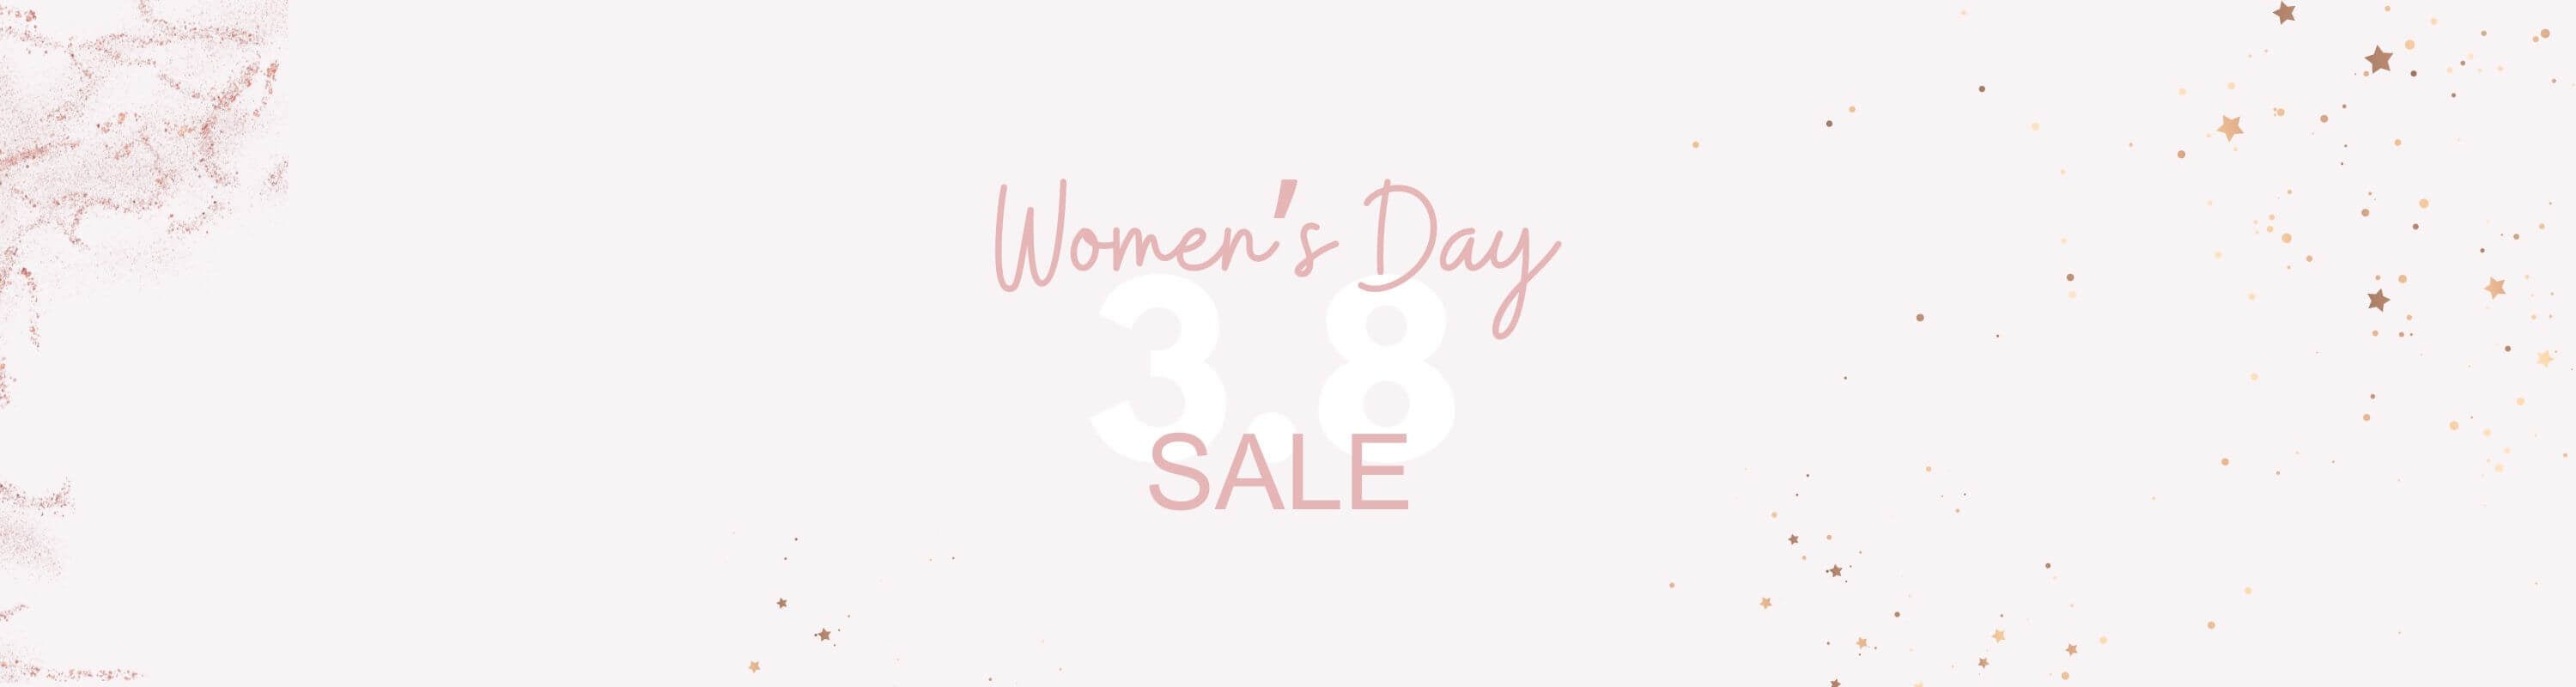 women's day sale